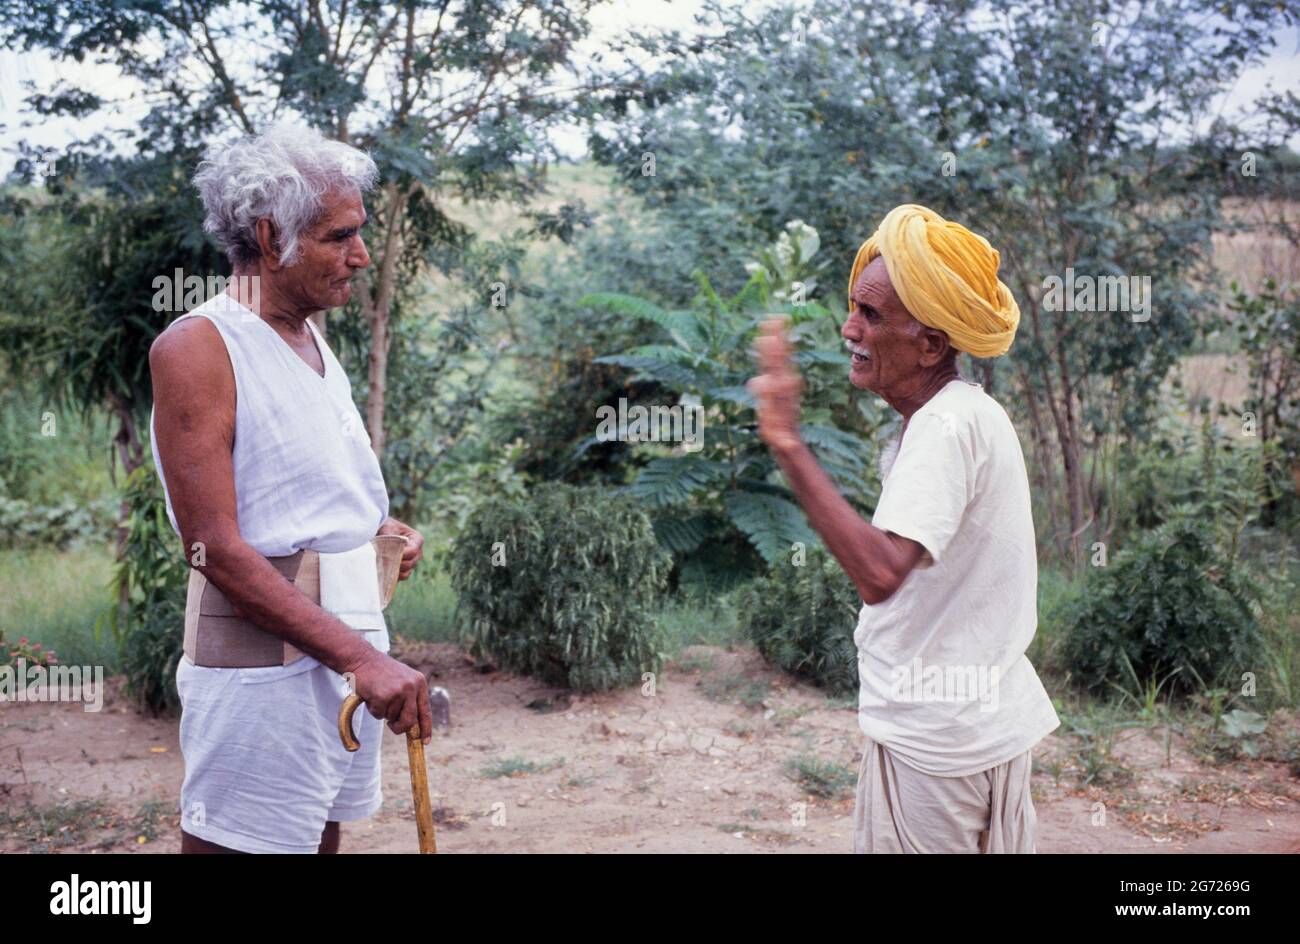 INDIA, fiume Narmada e dighe, sinistra: Attivista sociale Murlidhar Devidas AMTE 1914-2008, chiamato Baba AMTE, era discepolo di Mahatma Gandhi e ha fondato l'Ashram Anandwan per le persone che soffrono di lebbra, qui al suo ashram a Kasrawad al fiume Narmada, Per sostenere la lotta di Narmada Bachao Andolan NBA, movimento per salvare la Narmada, contro grandi dighe nella valle / INDIEN, Narmada Fluss und Staudaemme, Murlidhar Devidas AMTE, Baba AMTE Foto Stock